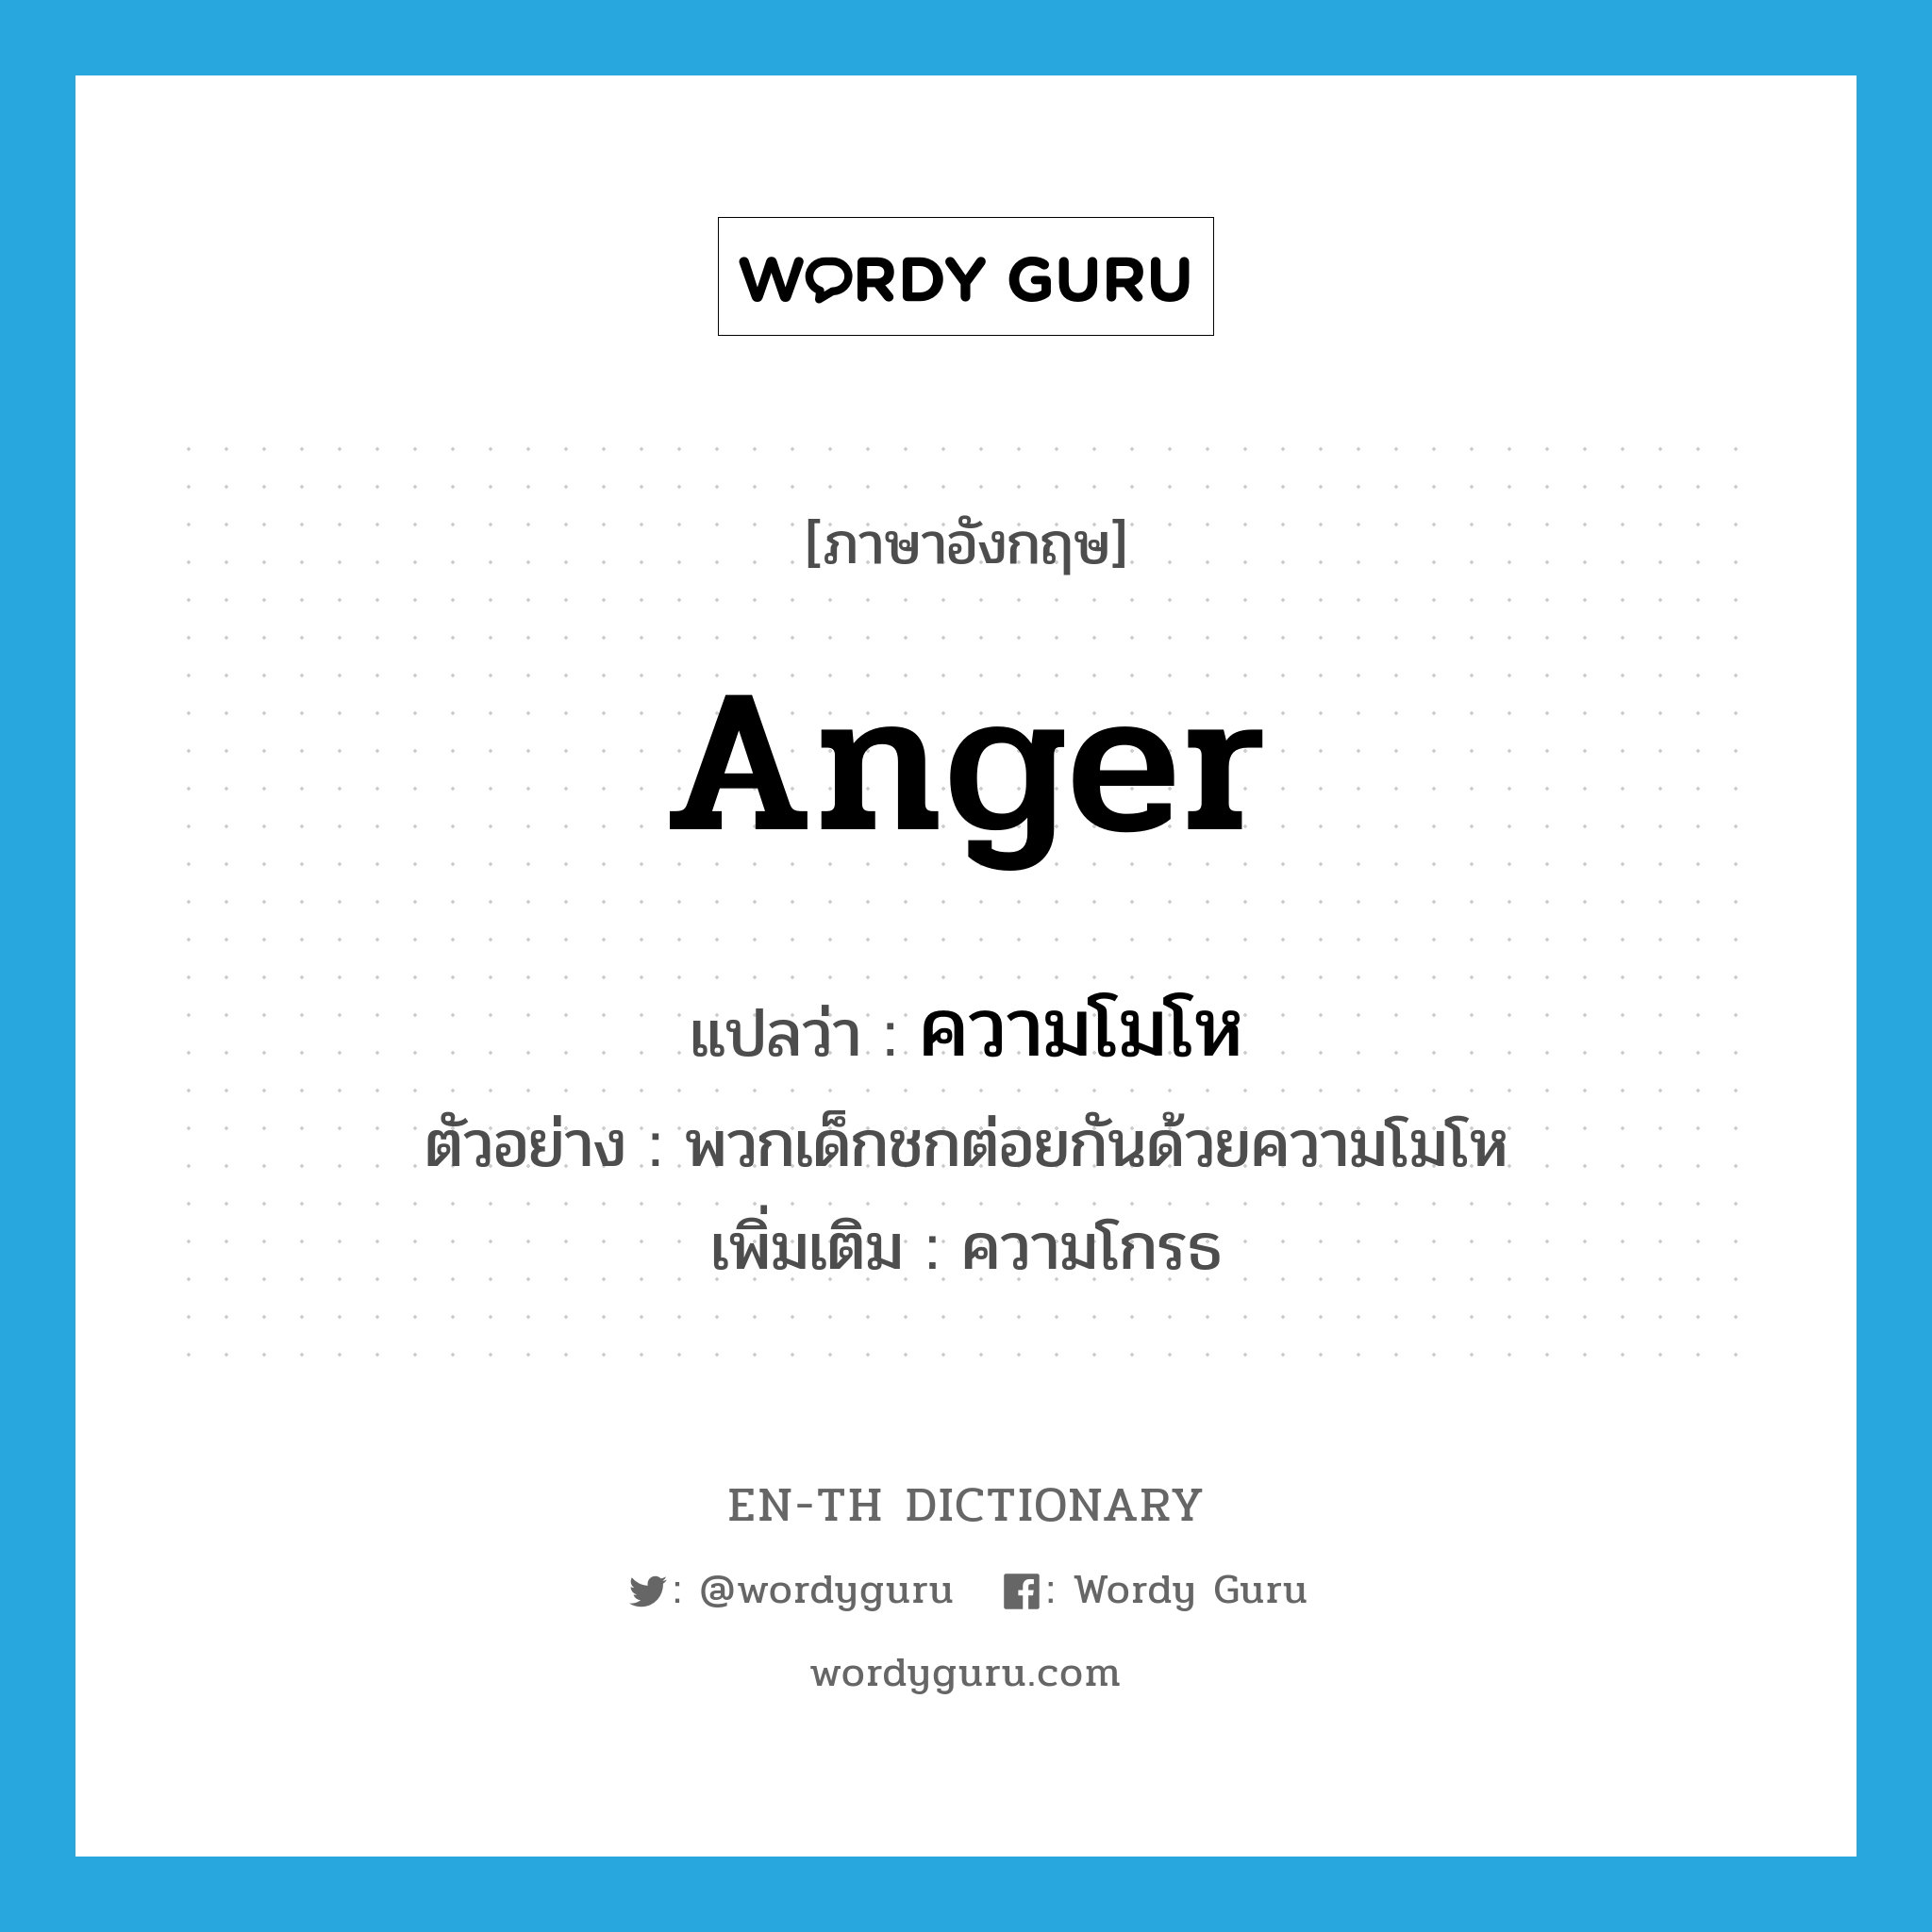 ความโมโห ภาษาอังกฤษ?, คำศัพท์ภาษาอังกฤษ ความโมโห แปลว่า anger ประเภท N ตัวอย่าง พวกเด็กชกต่อยกันด้วยความโมโห เพิ่มเติม ความโกรธ หมวด N